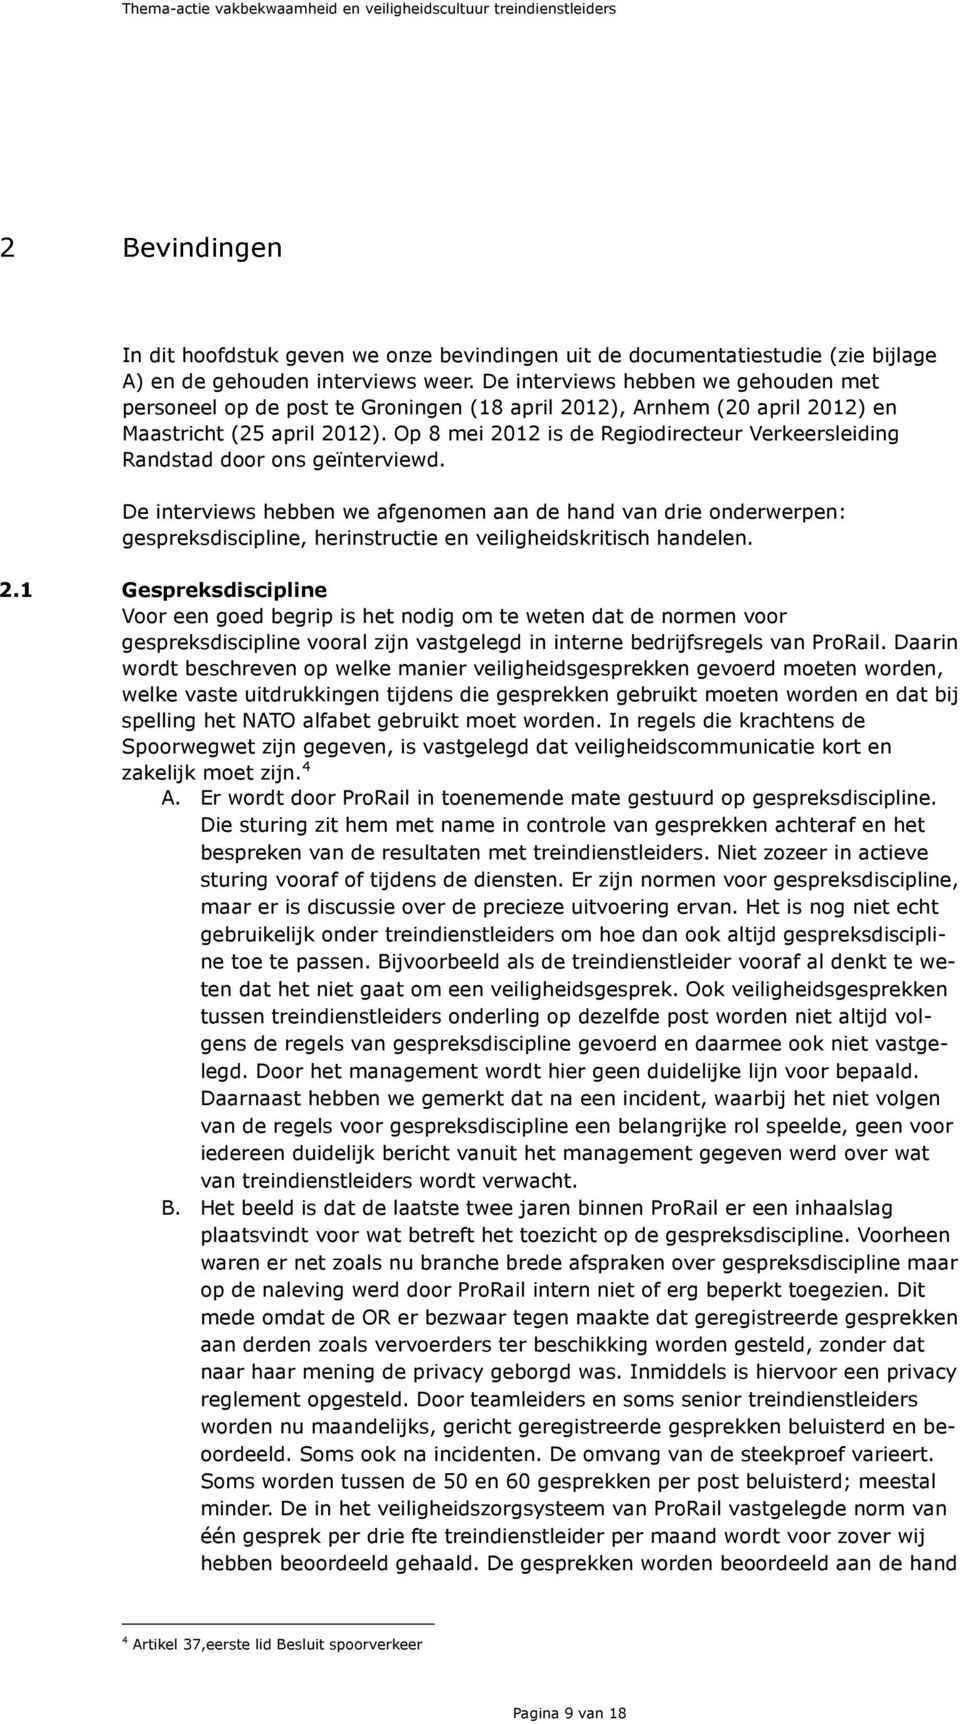 Op 8 mei 2012 is de Regiodirecteur Verkeersleiding Randstad door ons geïnterviewd.